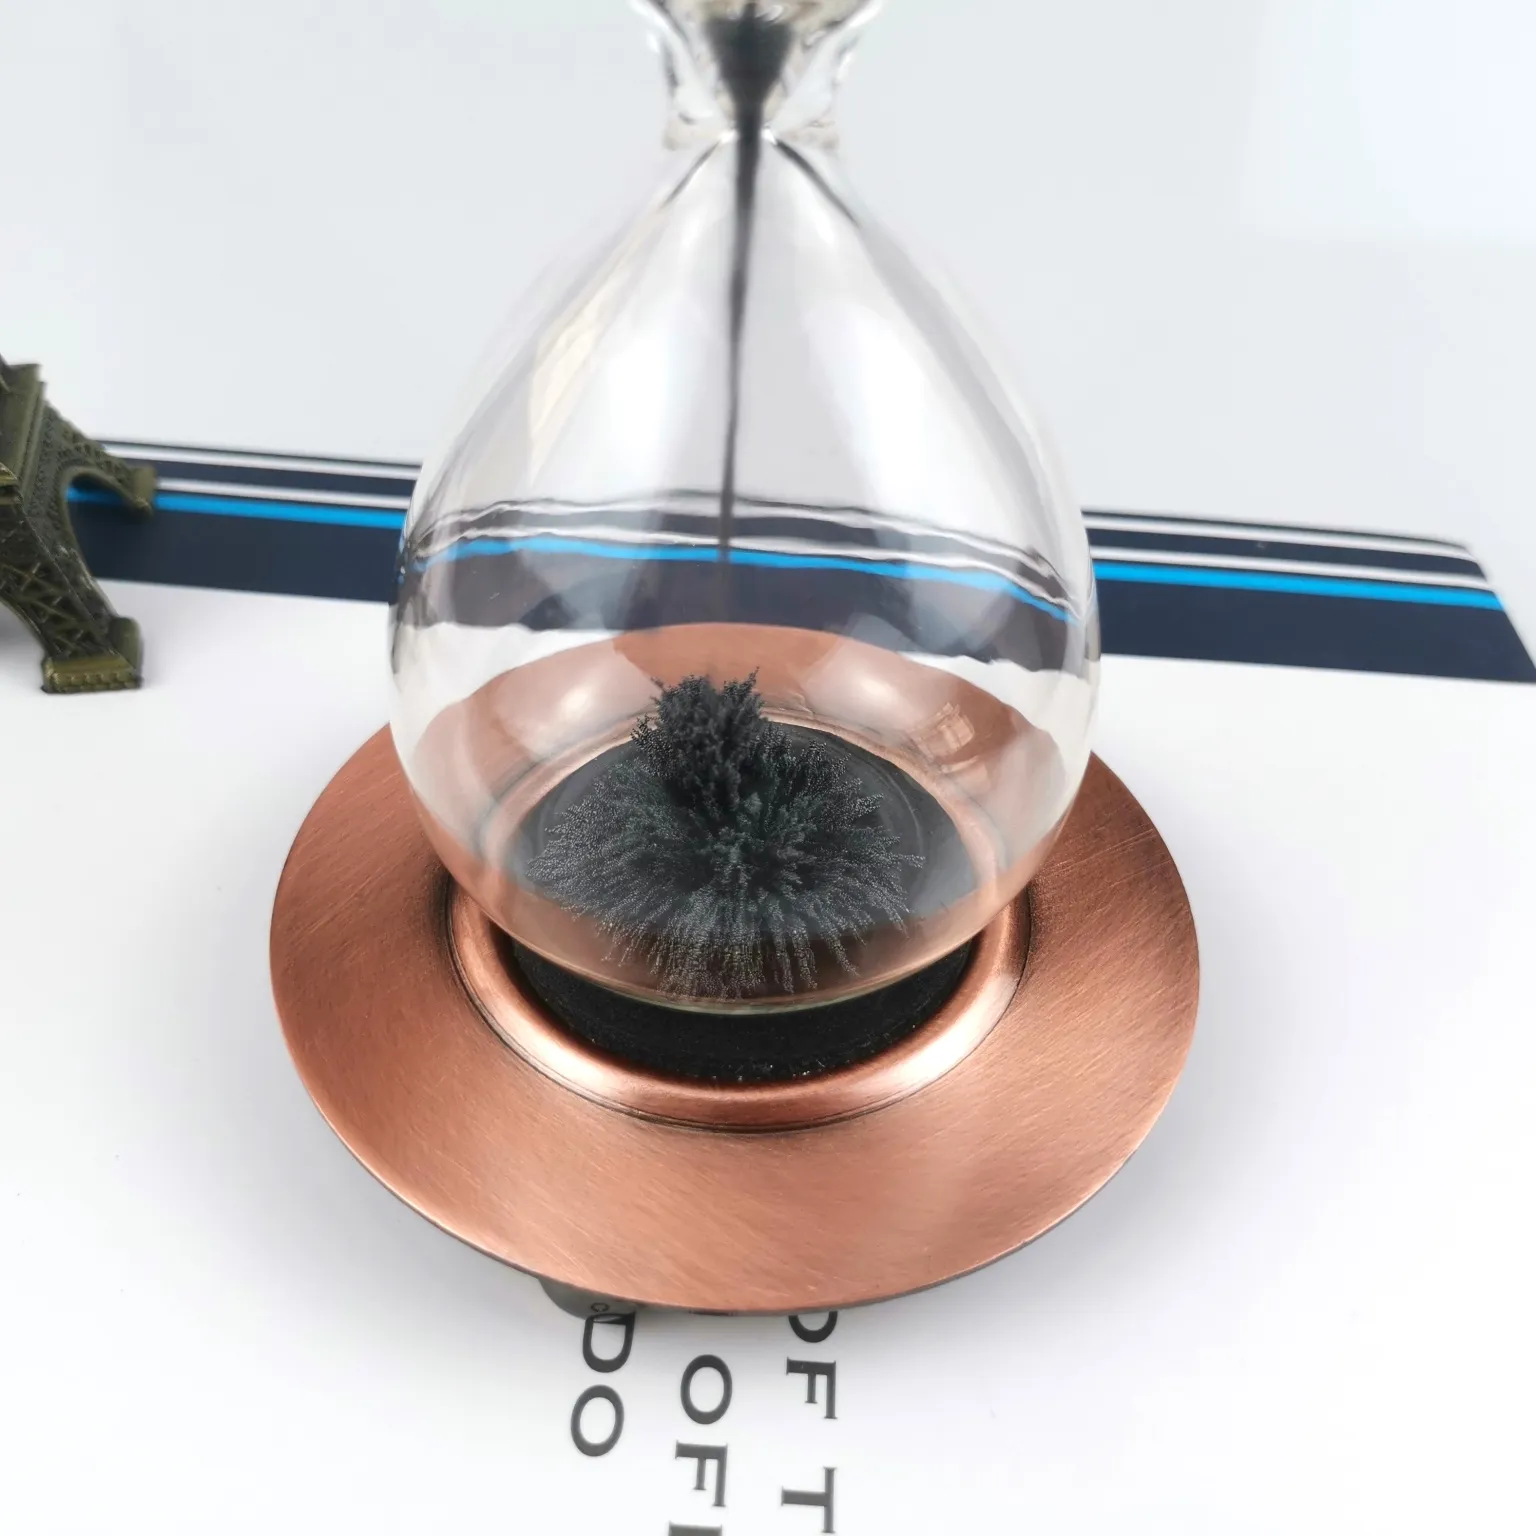 Фабричное изготовление на заказ, высококачественный магнит для стекла в стиле ретро, домашний декор, улучшает качество жизни, песочные часы